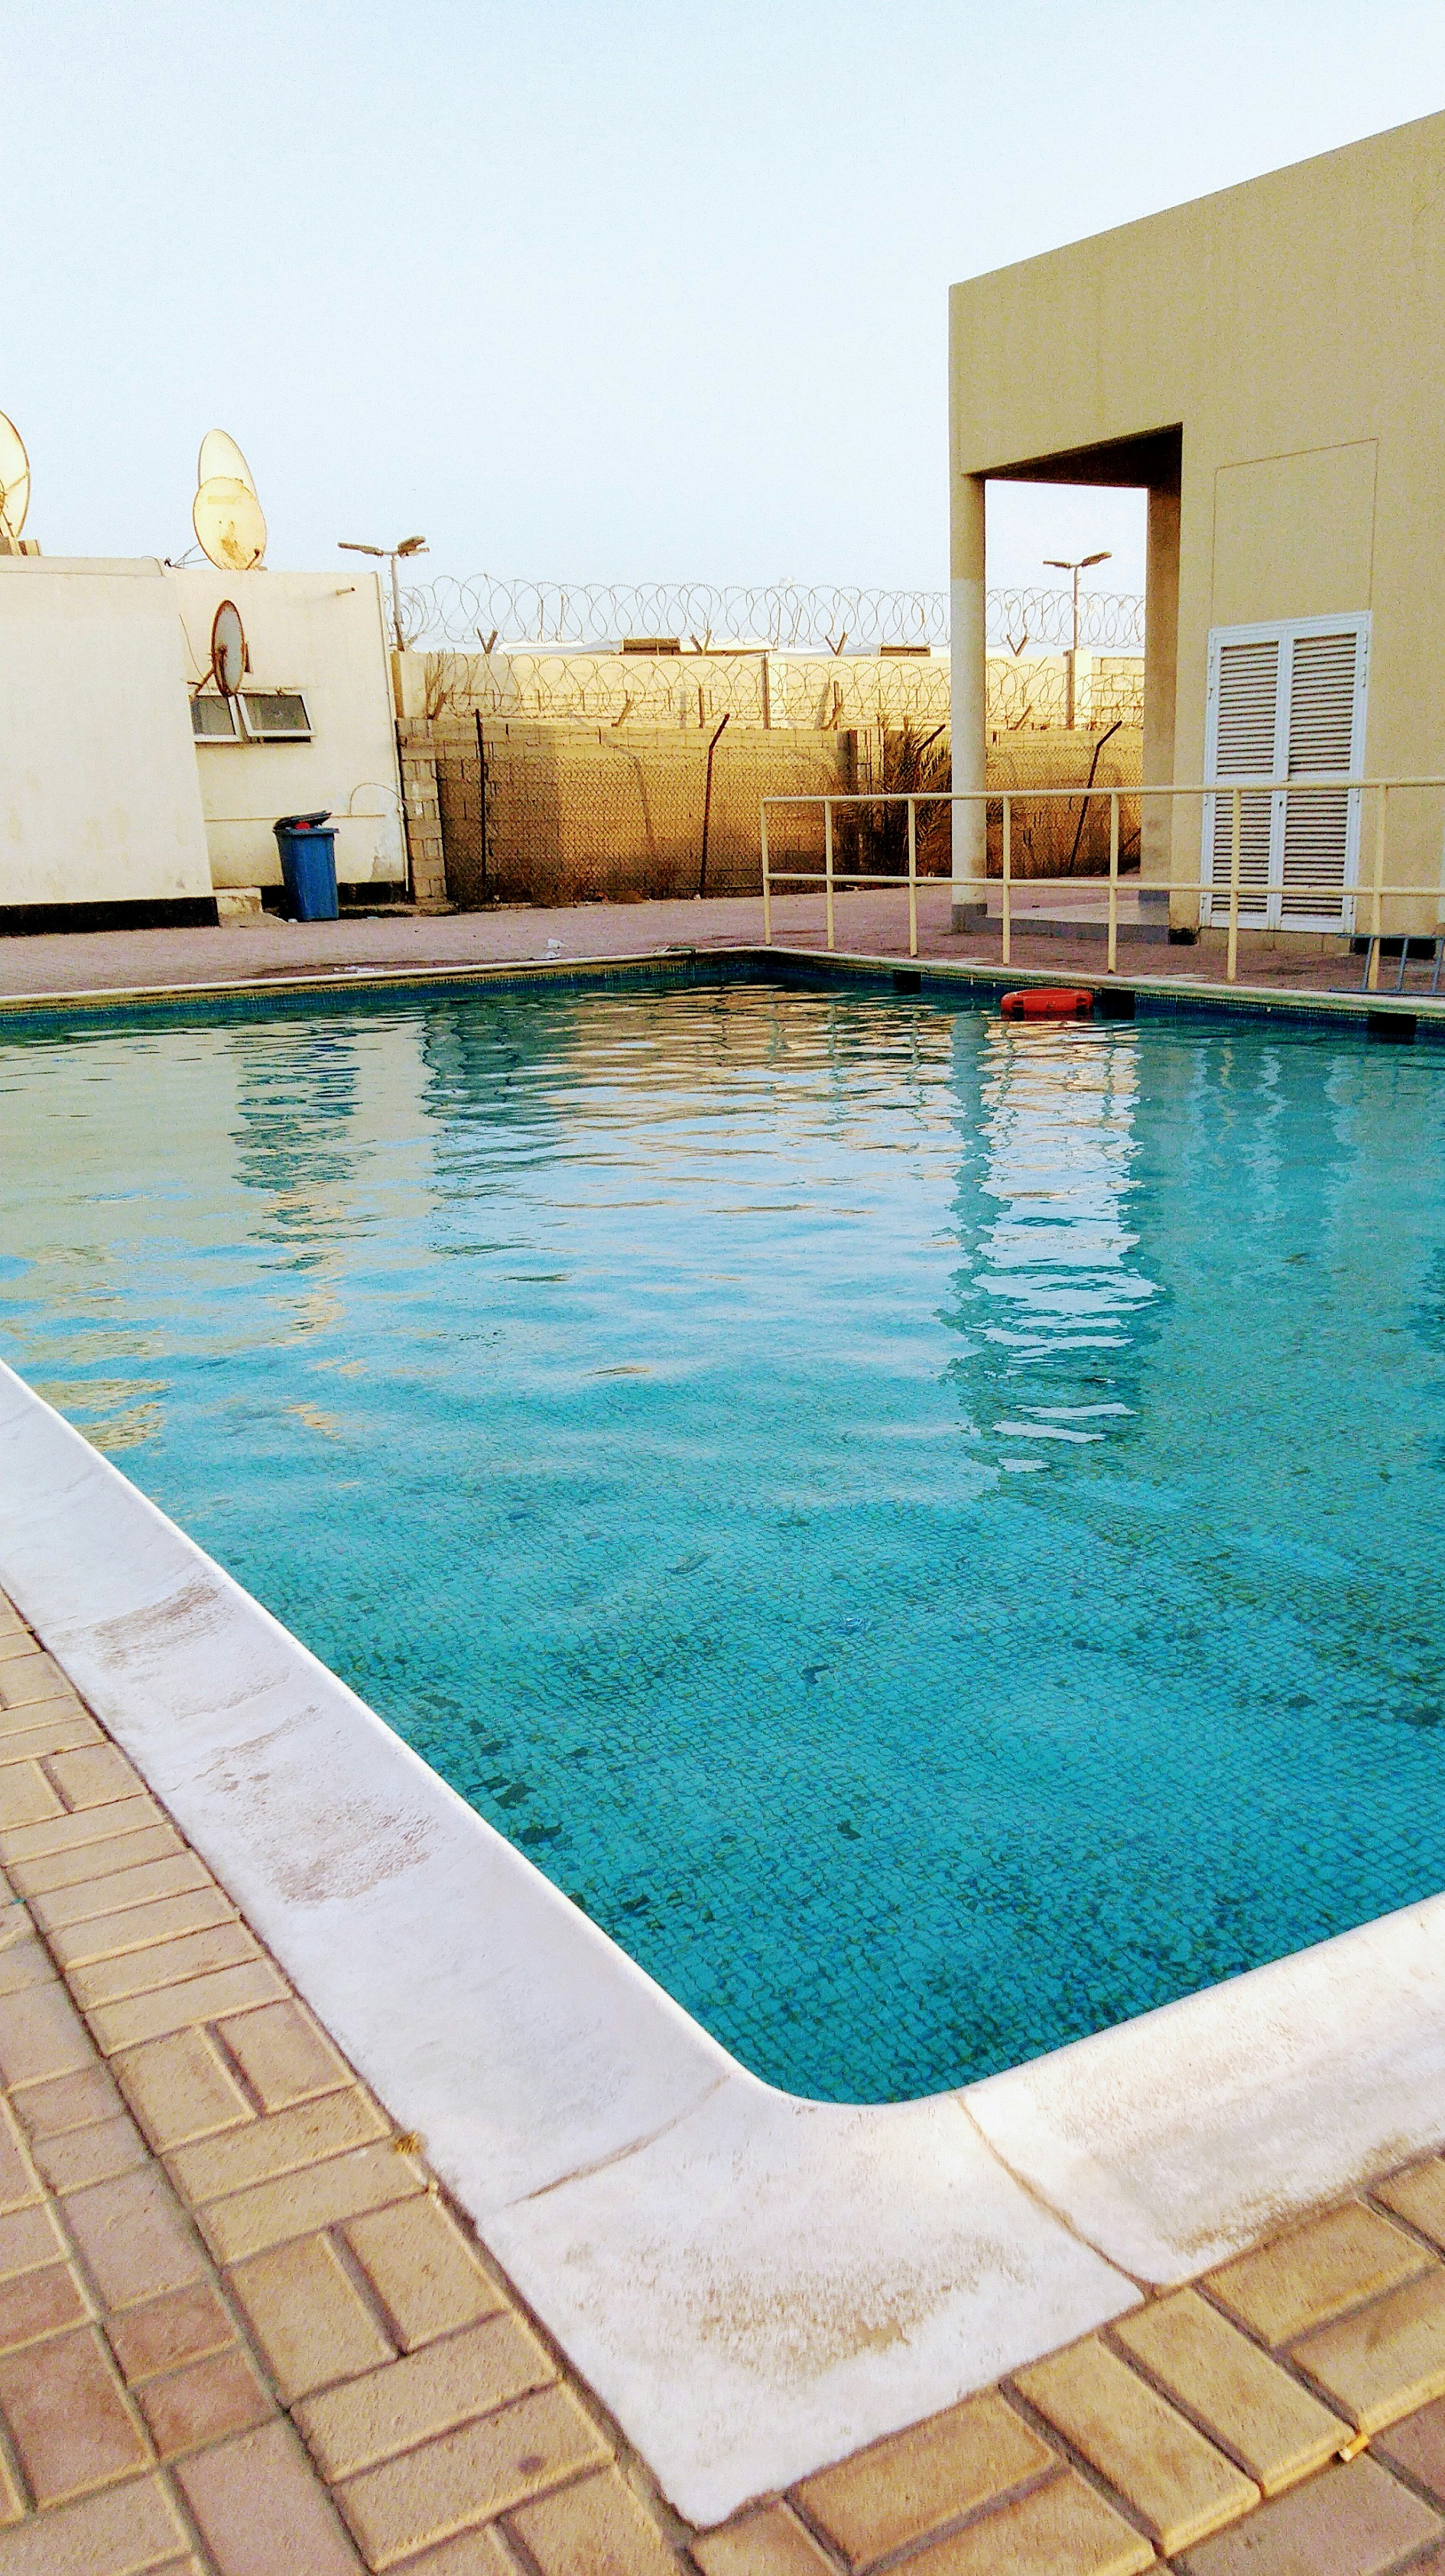 Pool Repair